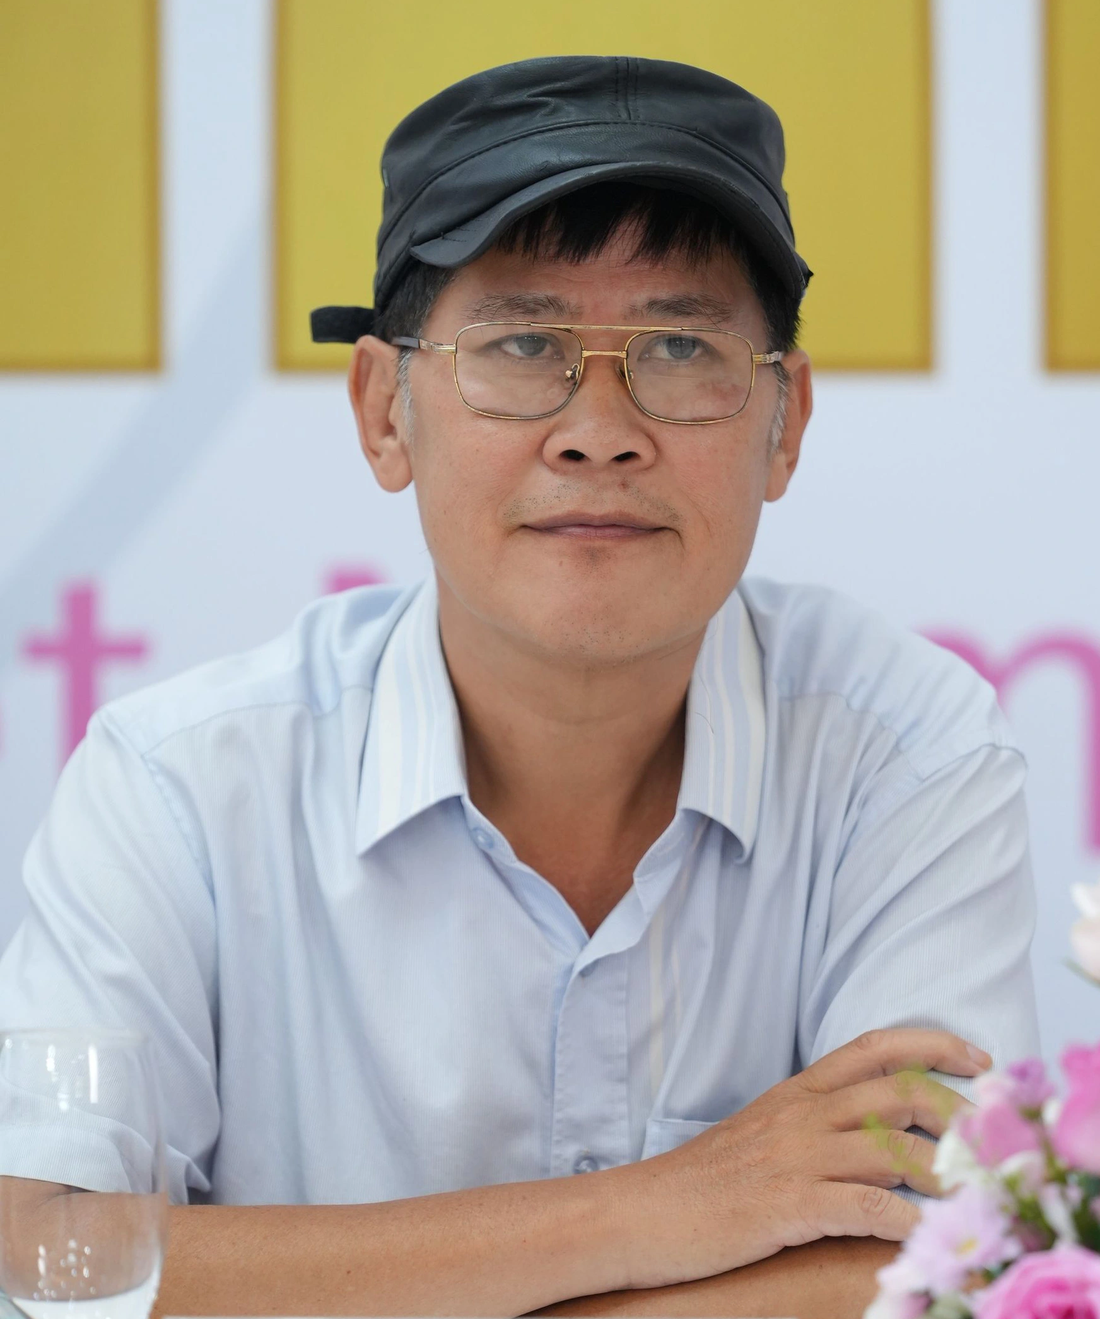 Phước Sang nhận lời mời làm giám khảo vì ý nghĩa nhân văn của cuộc thi - Ảnh: BTC